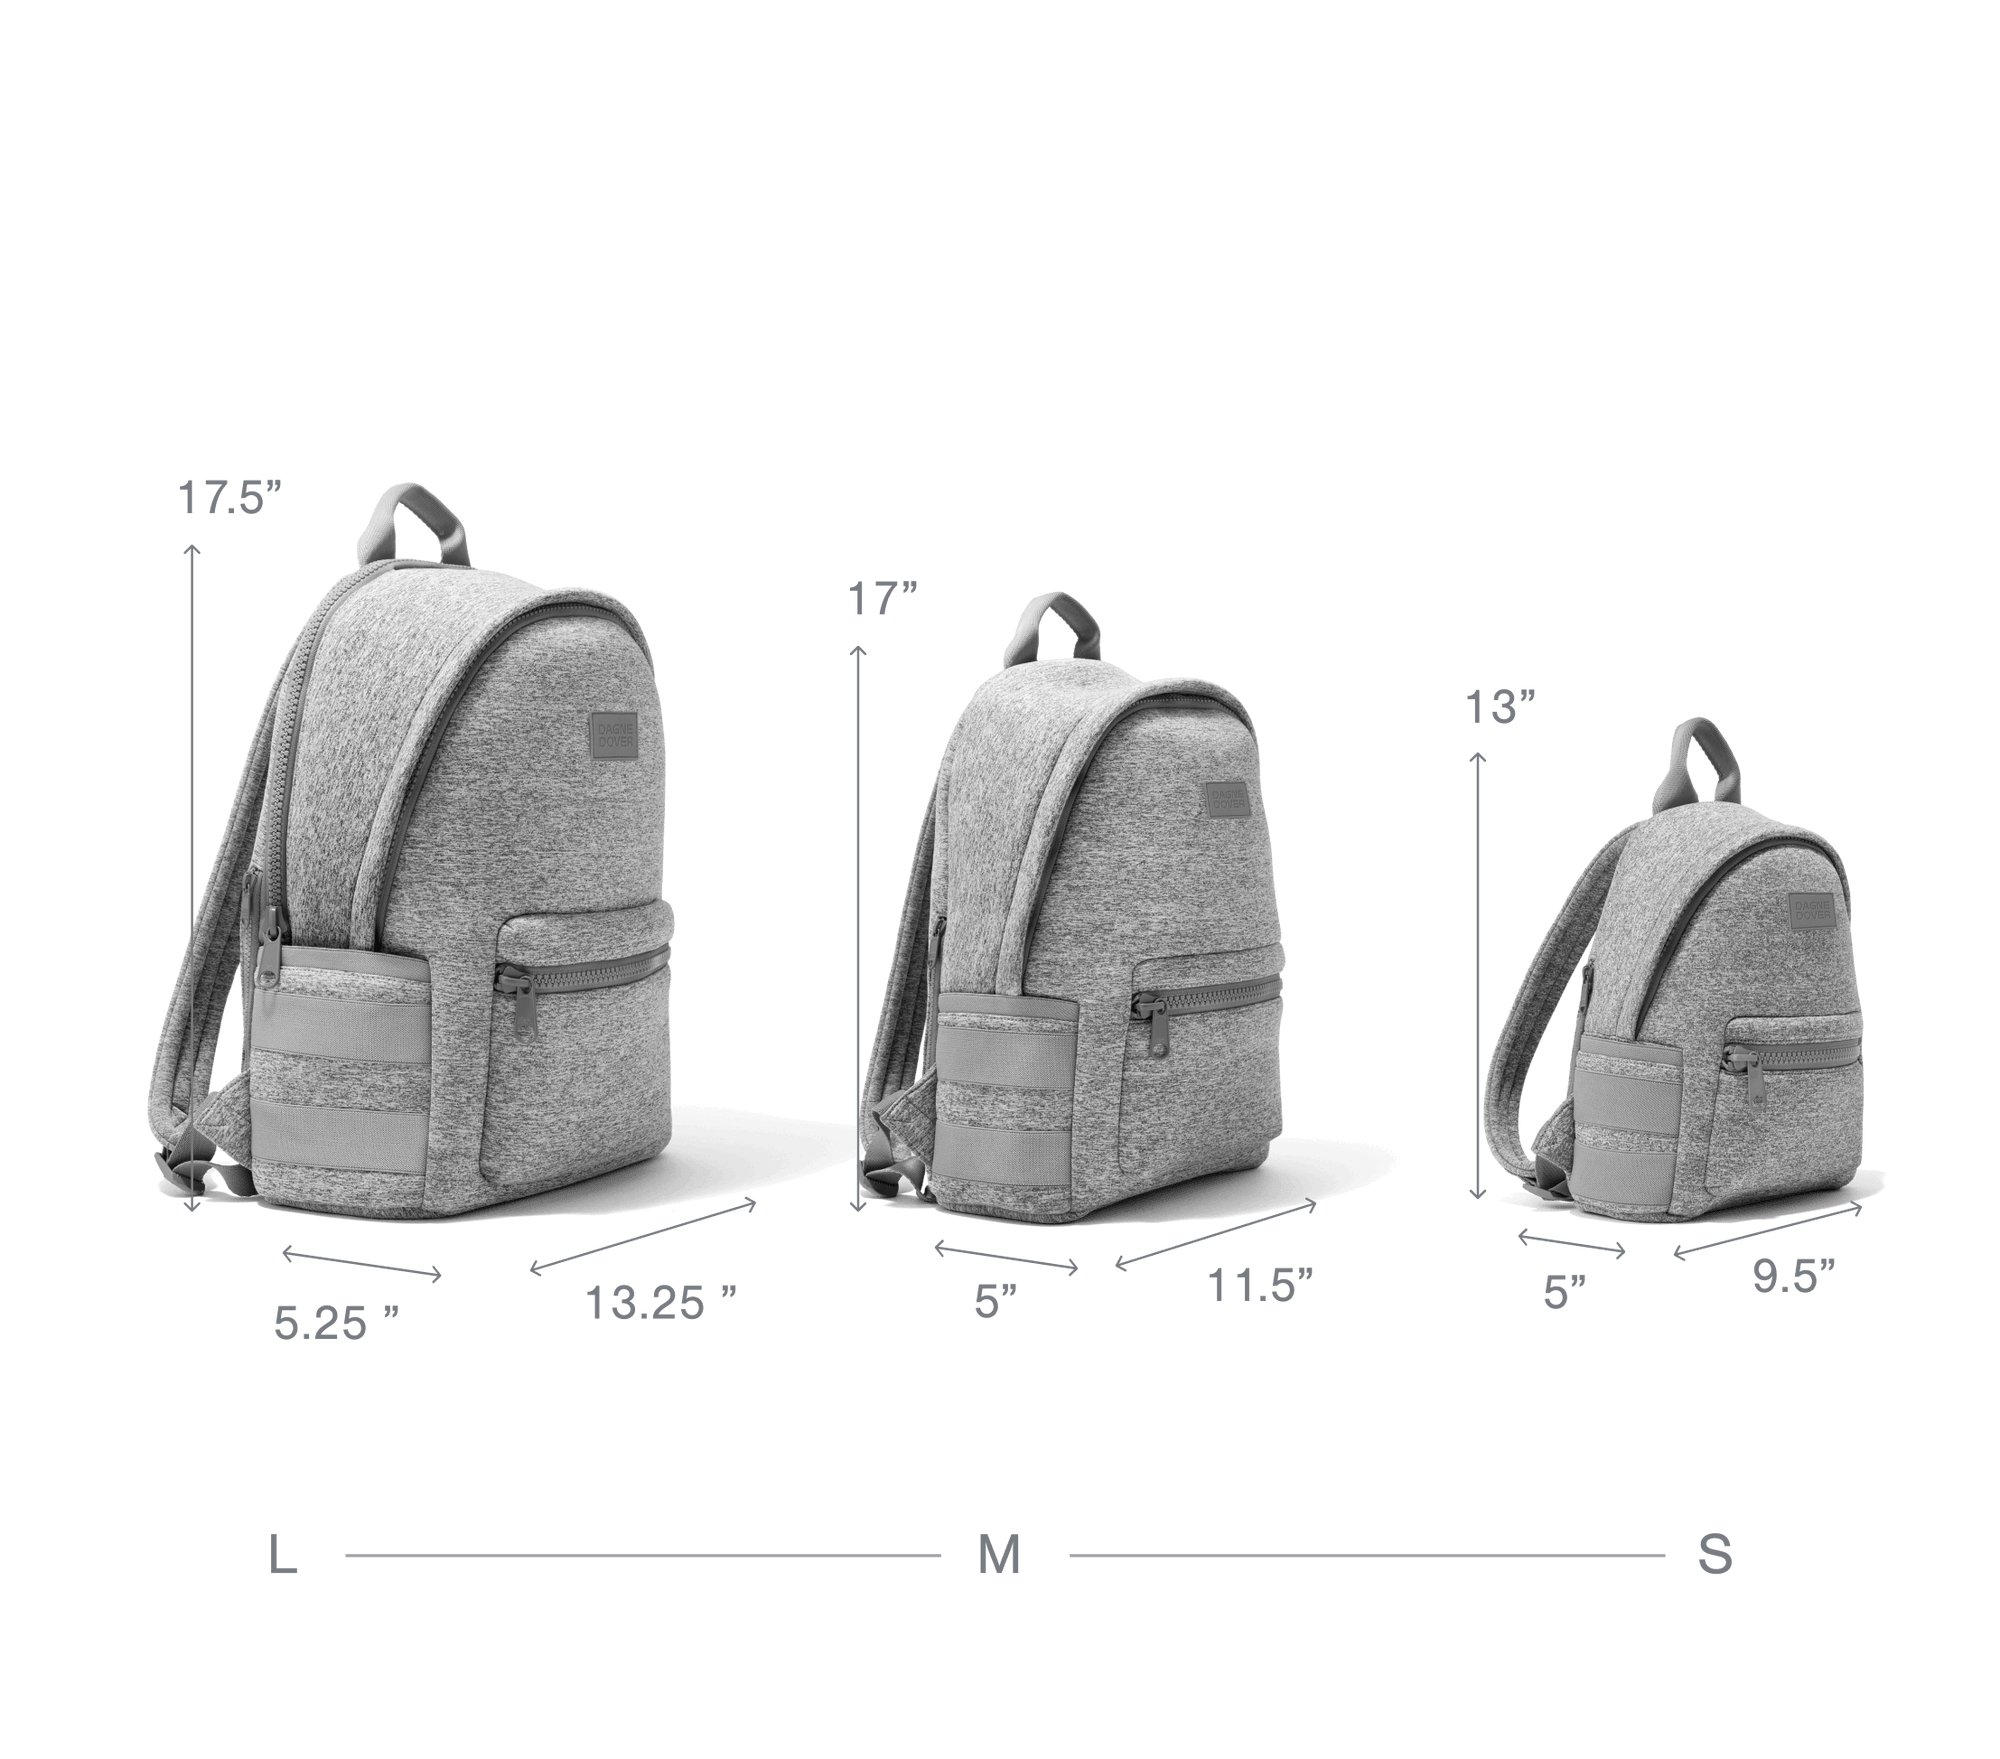 Dagne Dover Small Neoprene Backpack